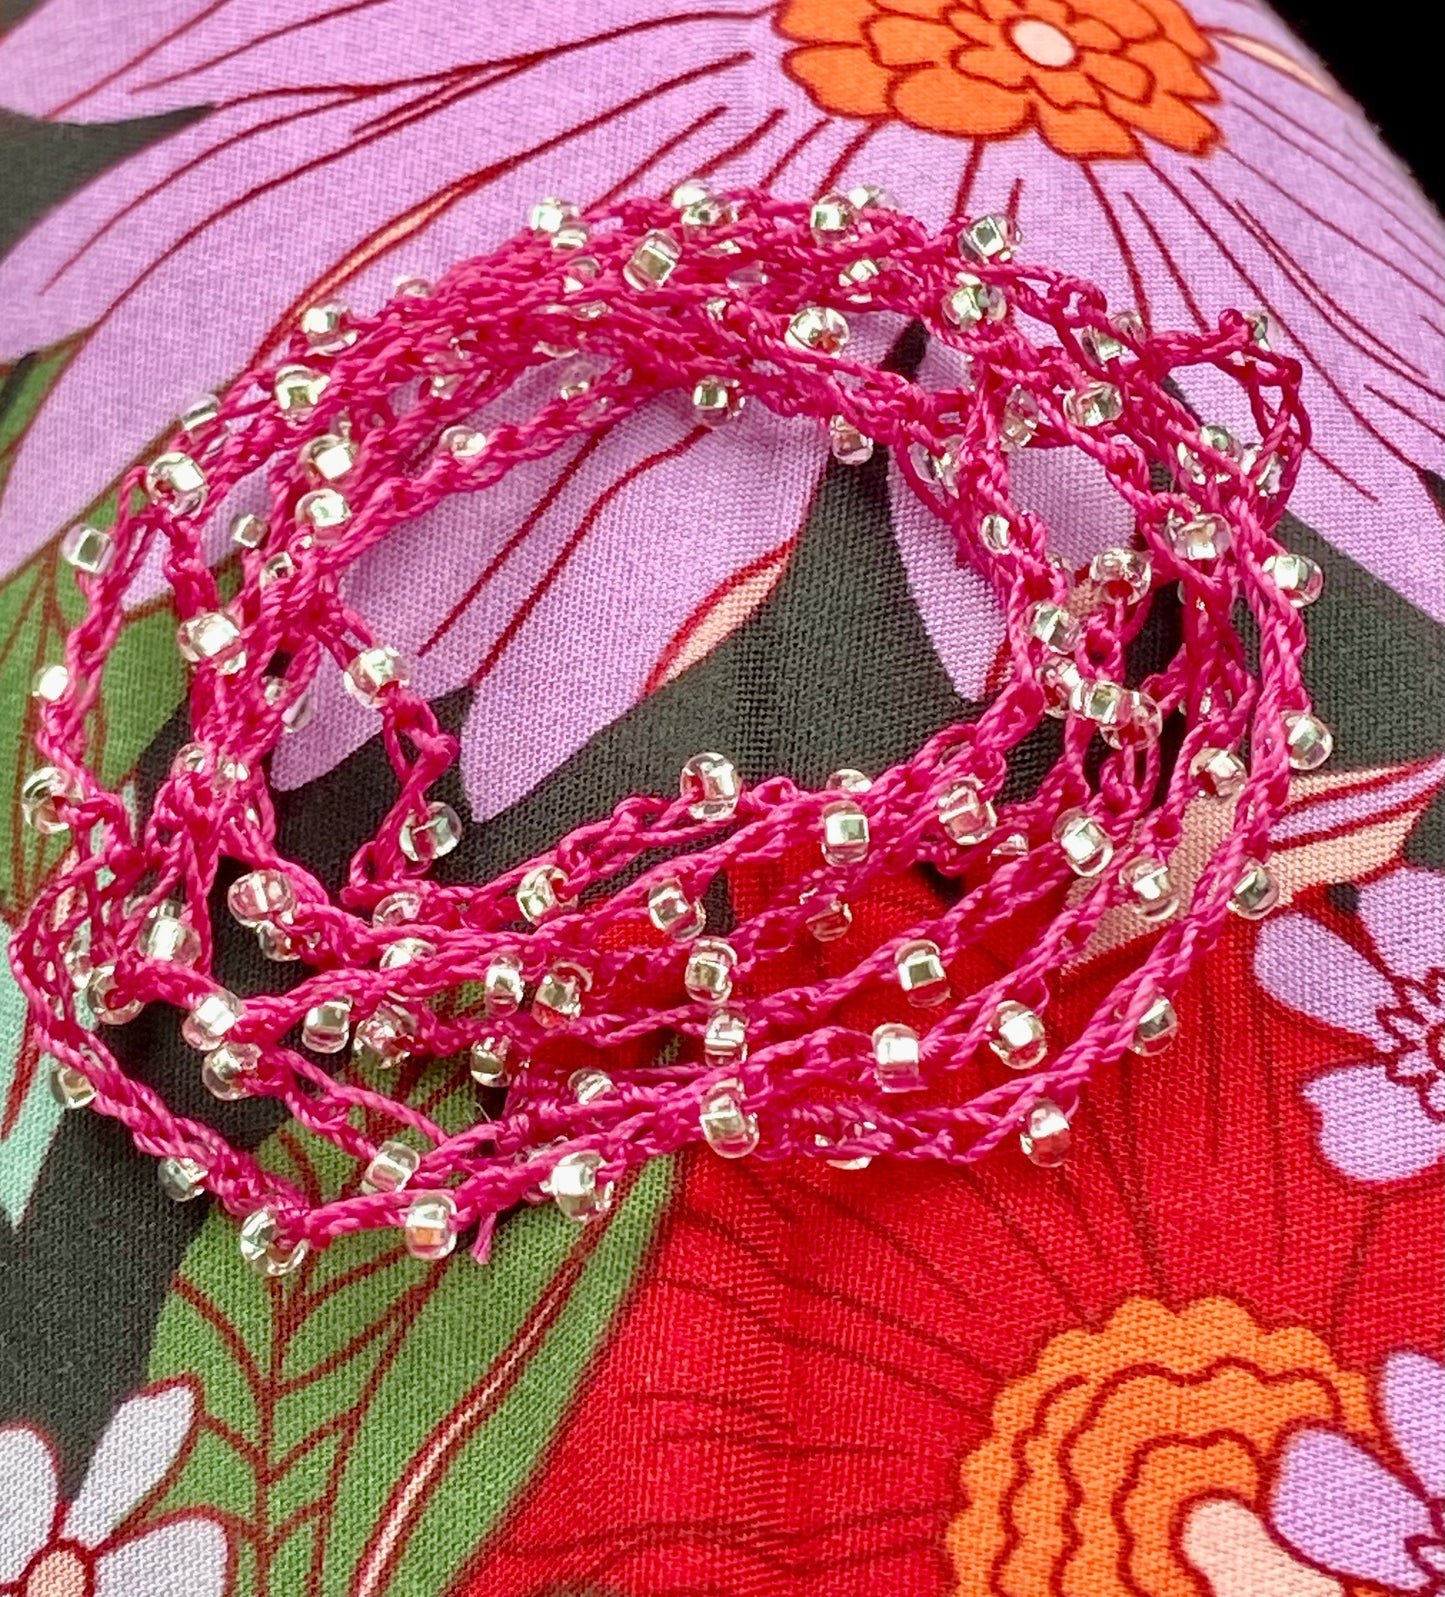 Fabulous Fuchsia Crocheted Wrap Bracelet